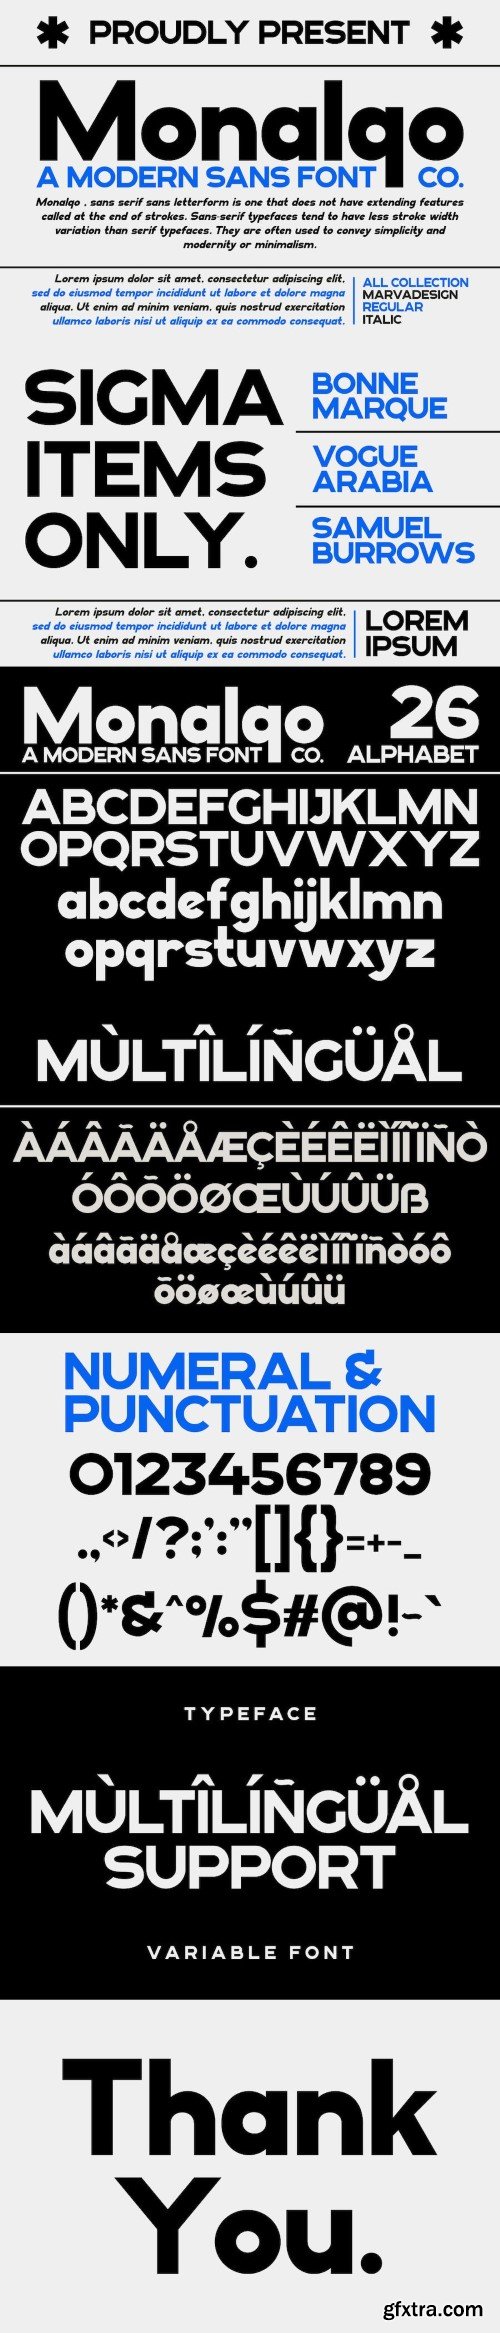 Monalqo - A Modern Sans Serif Font